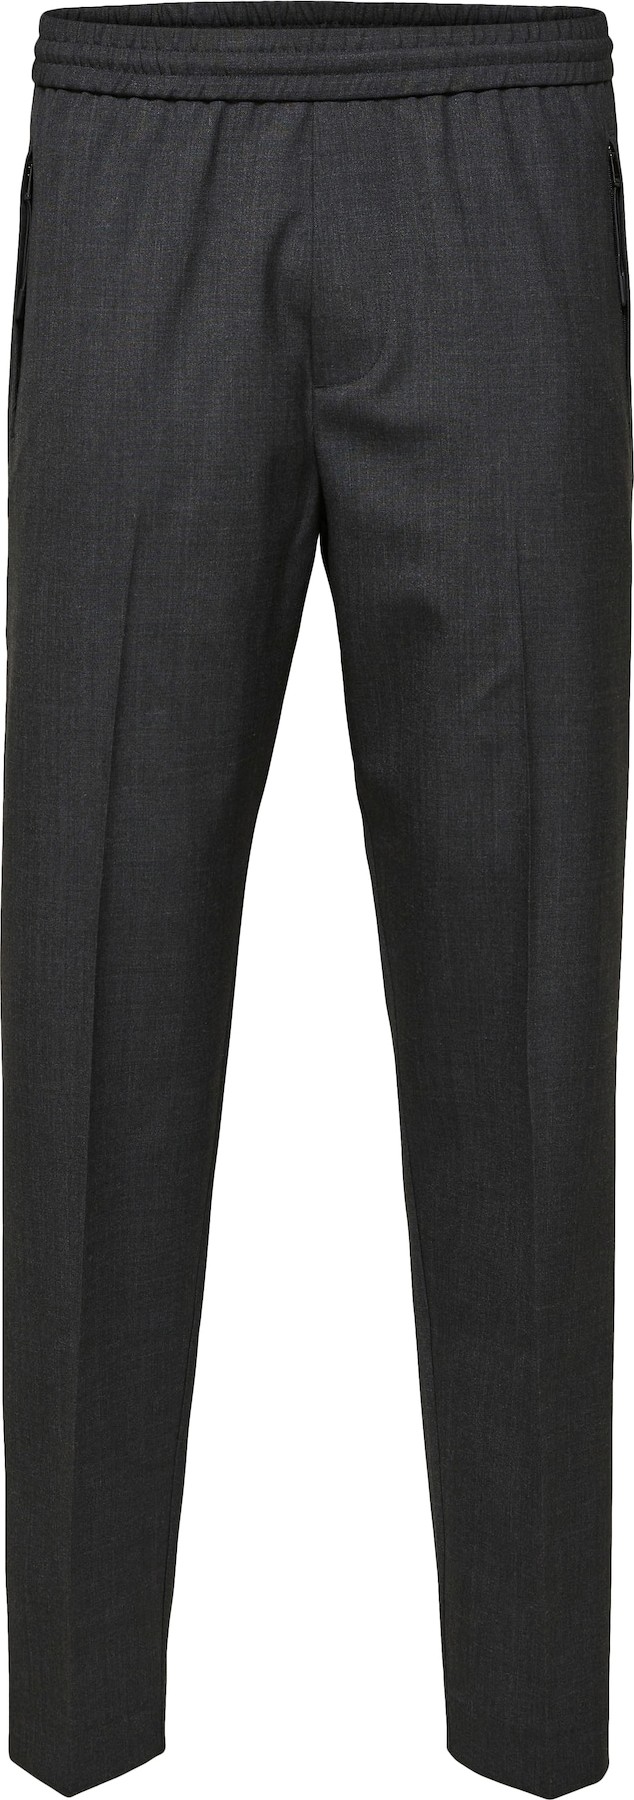 SELECTED HOMME Kalhoty s puky šedý melír